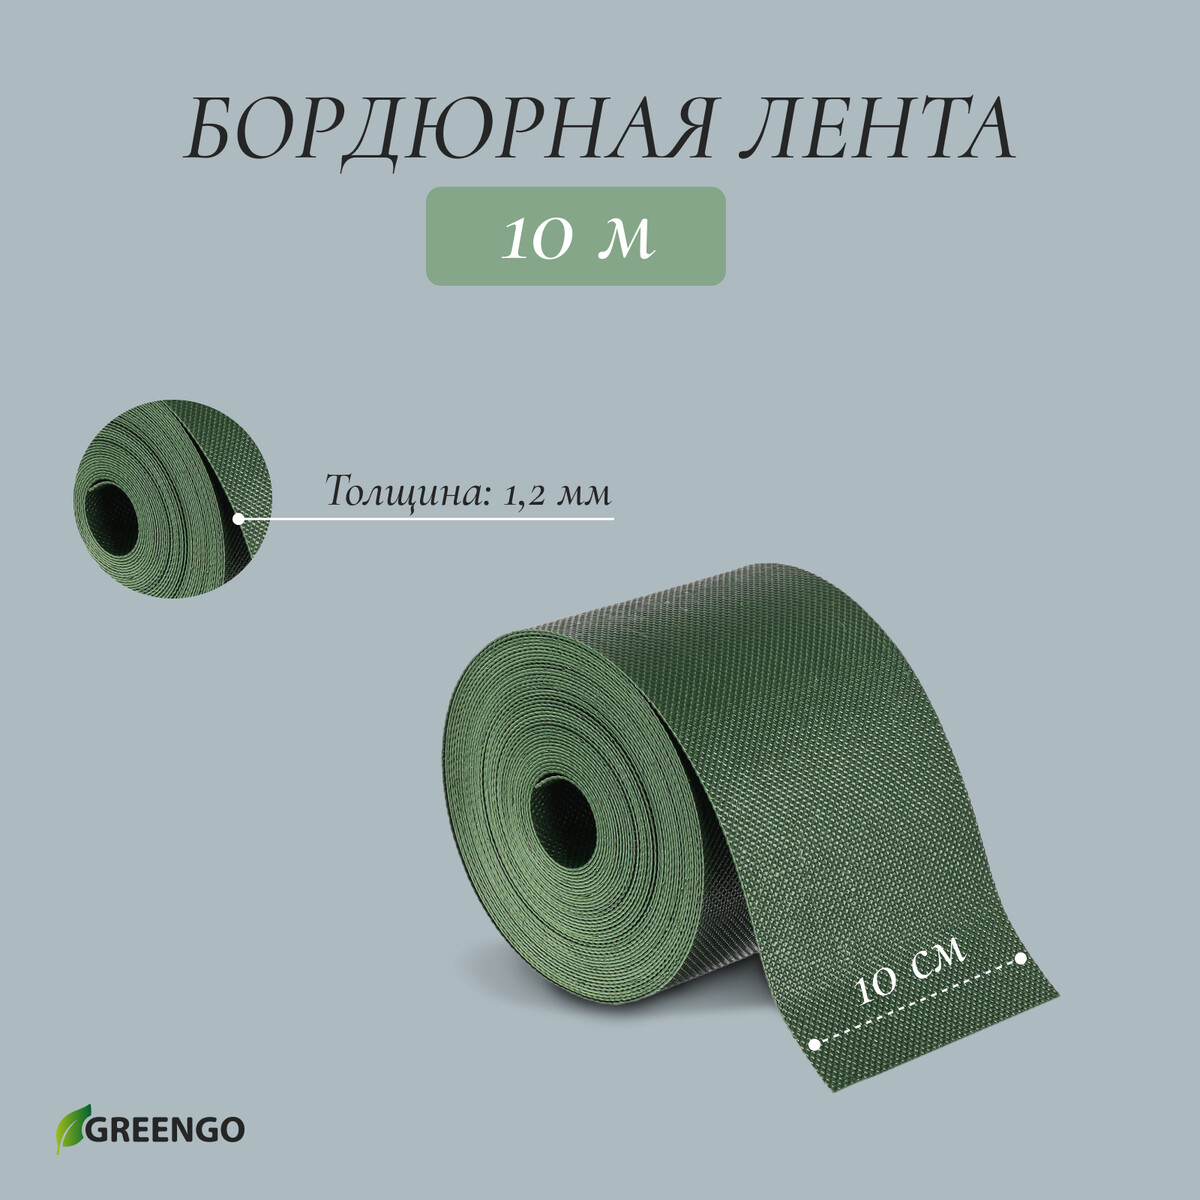 Лента бордюрная, 0.1 × 10 м, толщина 1.2 мм, пластиковая, зеленая, greengo лента бордюрная 0 15 × 9 м толщина 1 2 мм пластиковая фигурная зеленая